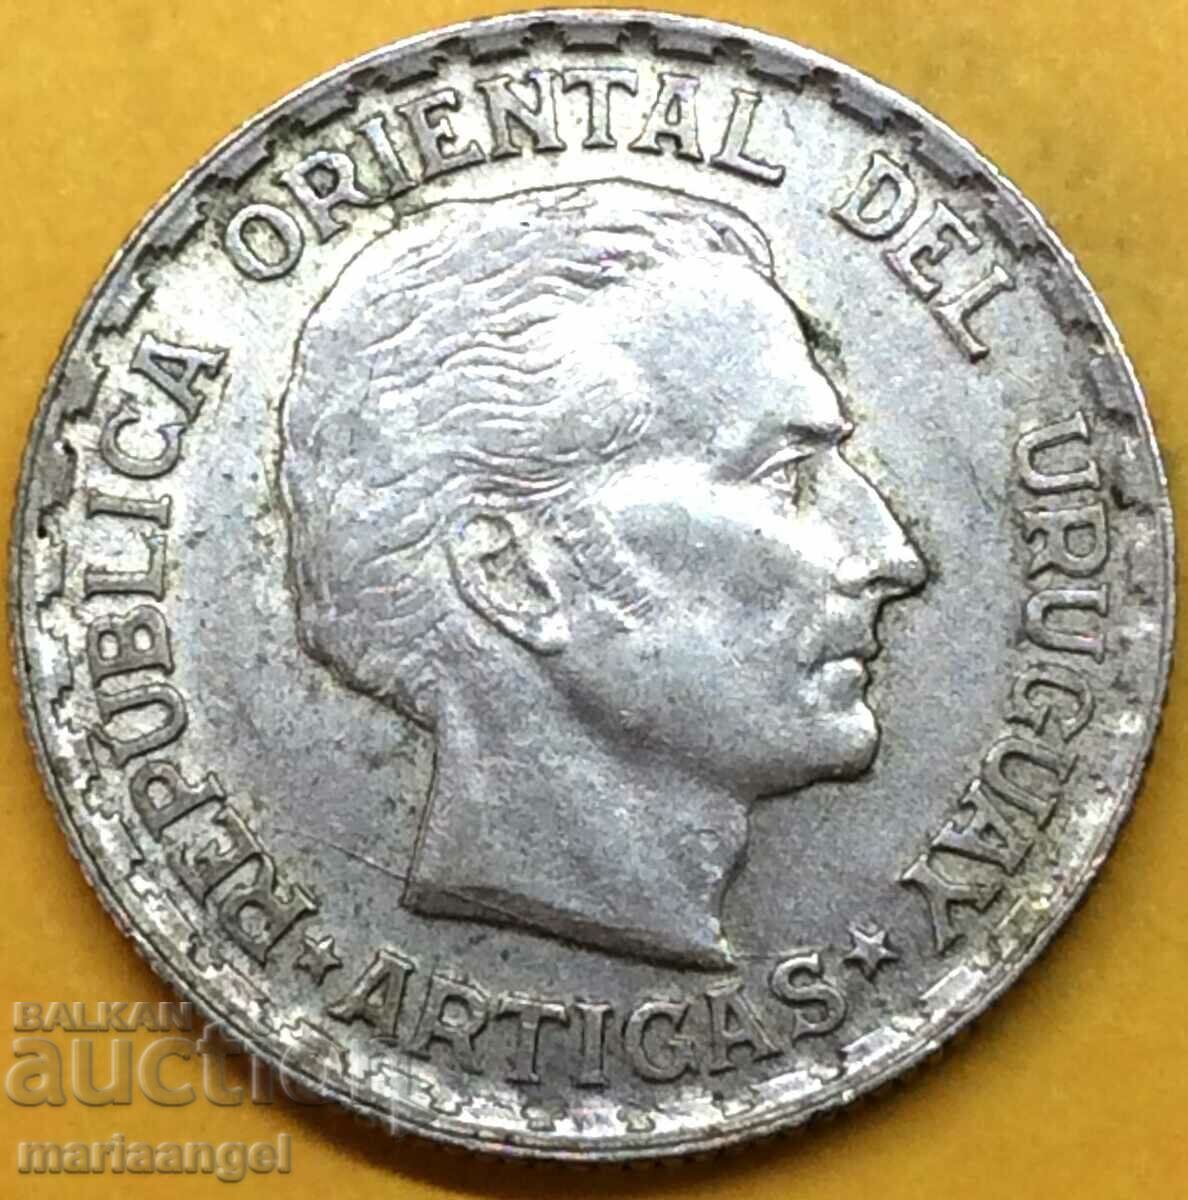 Uruguay 50 cenți 1943 de argint